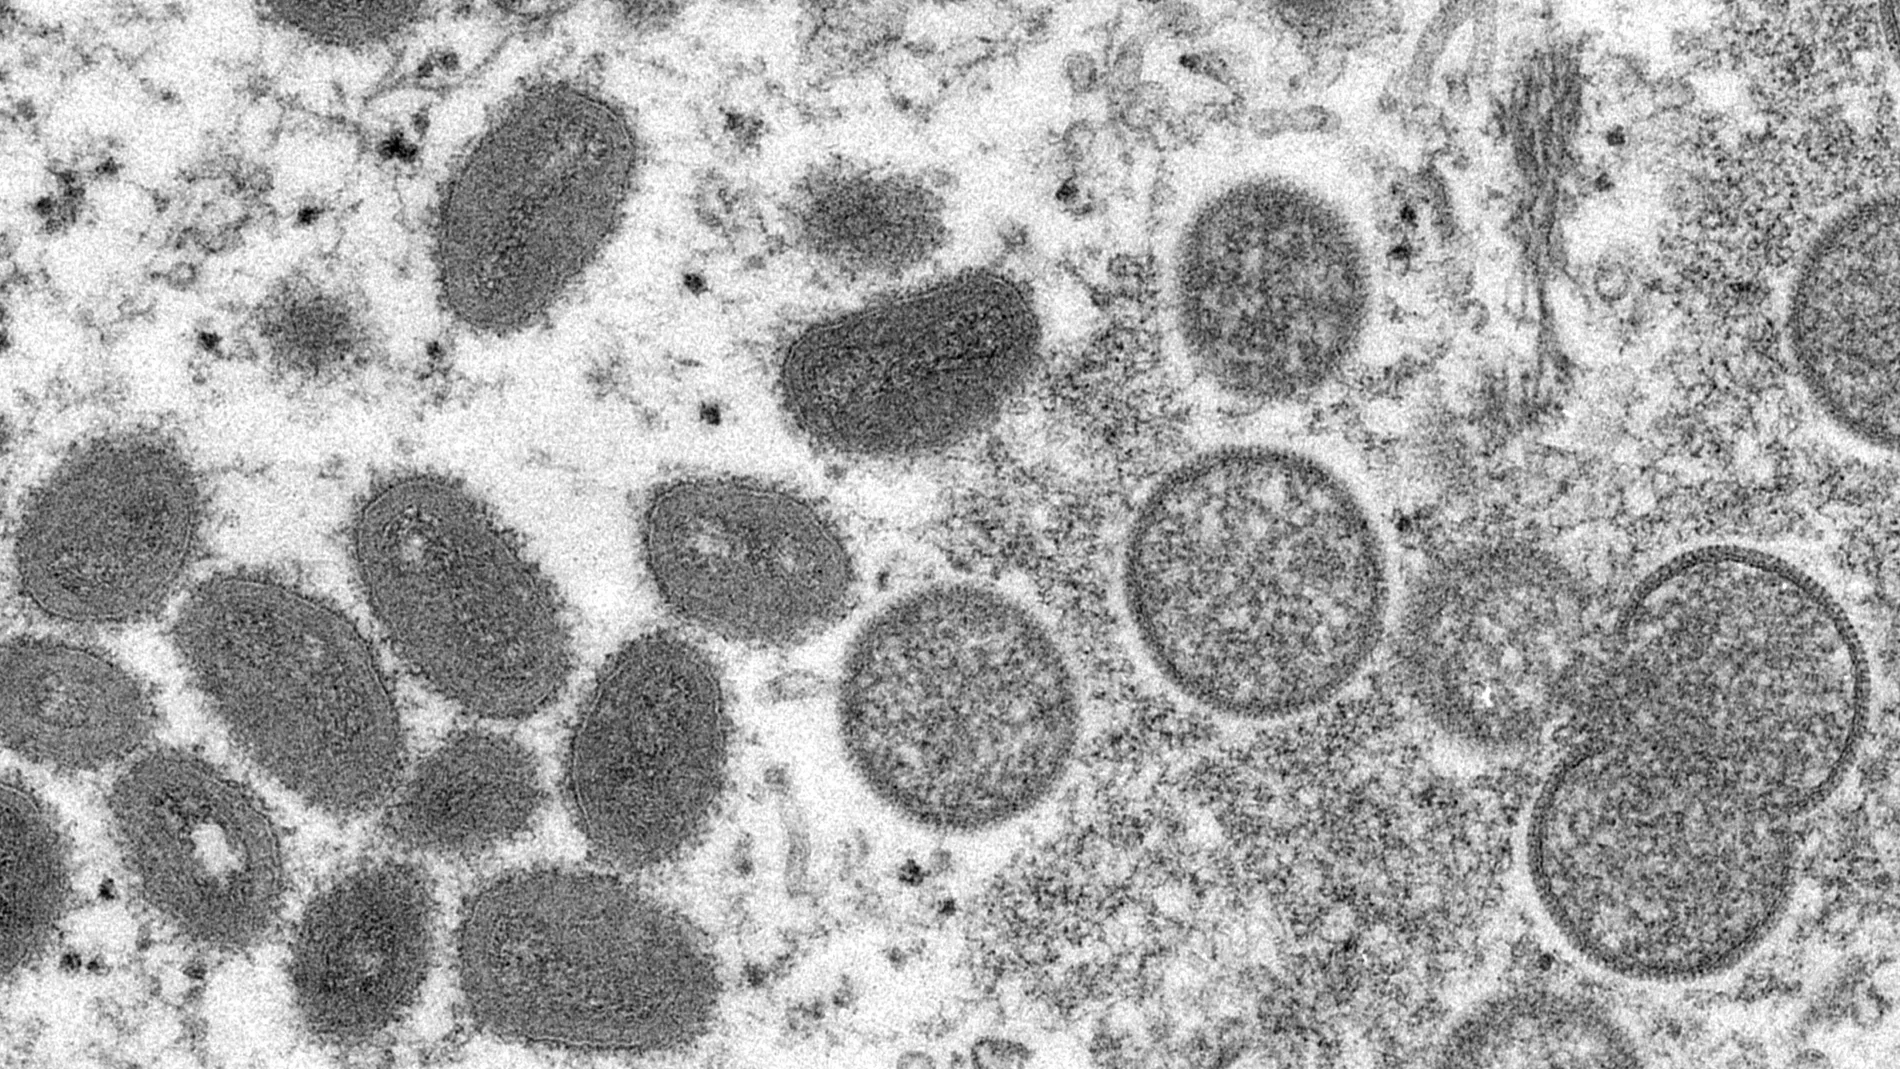 Imagen microscópica del Centers for Disease Control and Prevention del virus